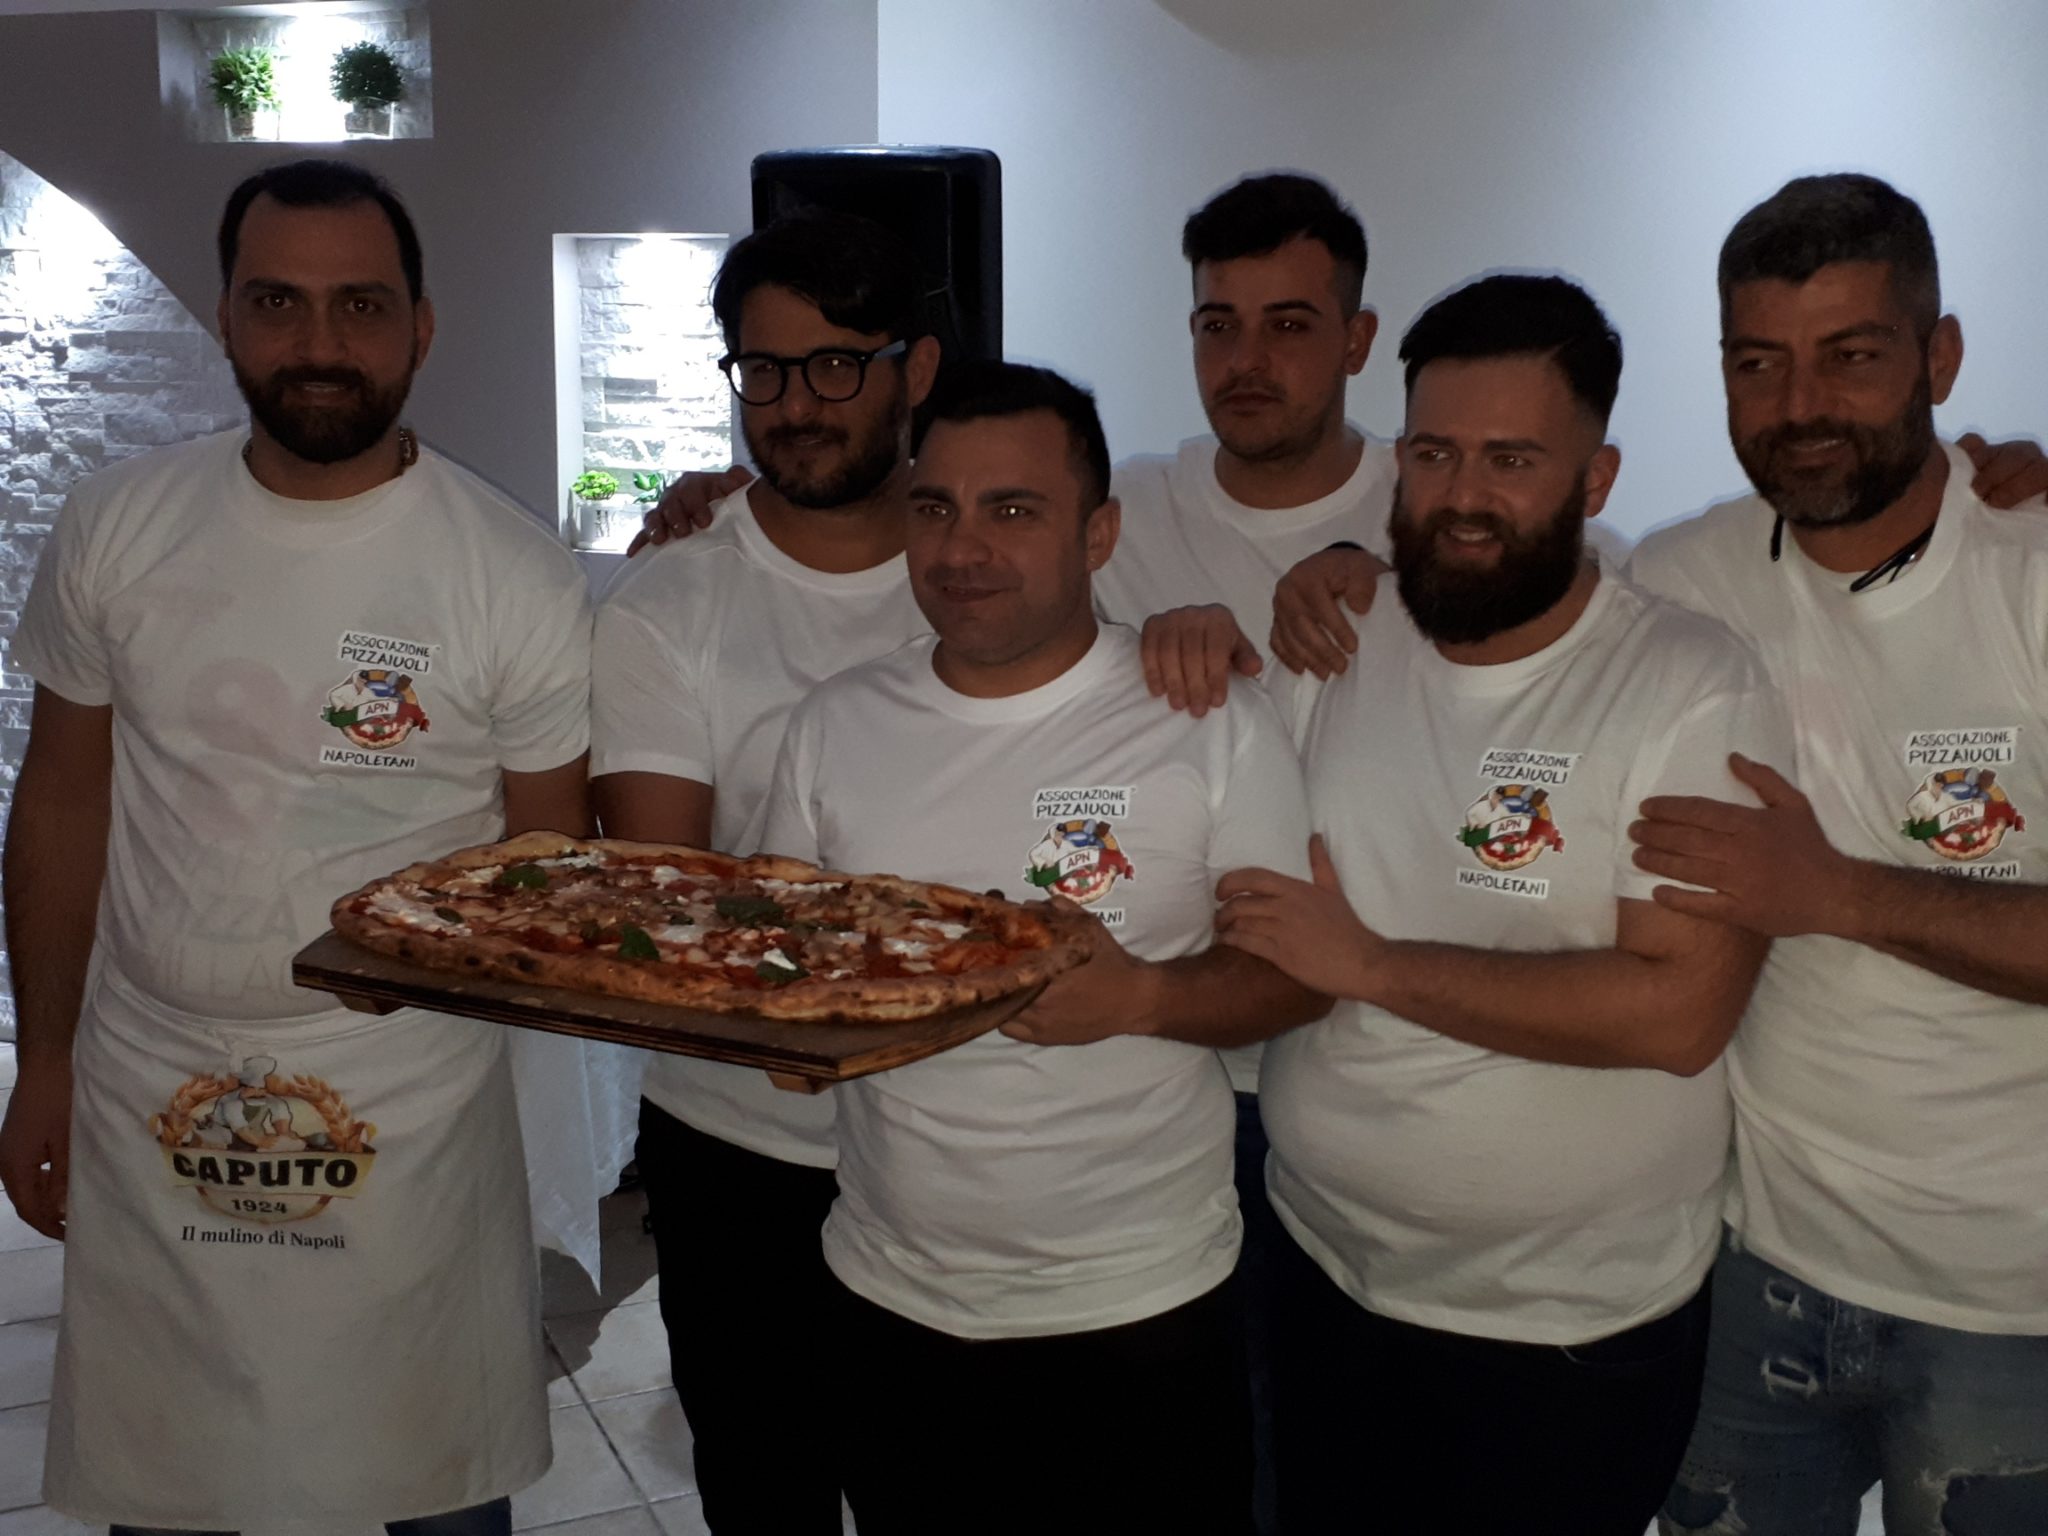 La pizza di Sant’Antuono - Sapori News 